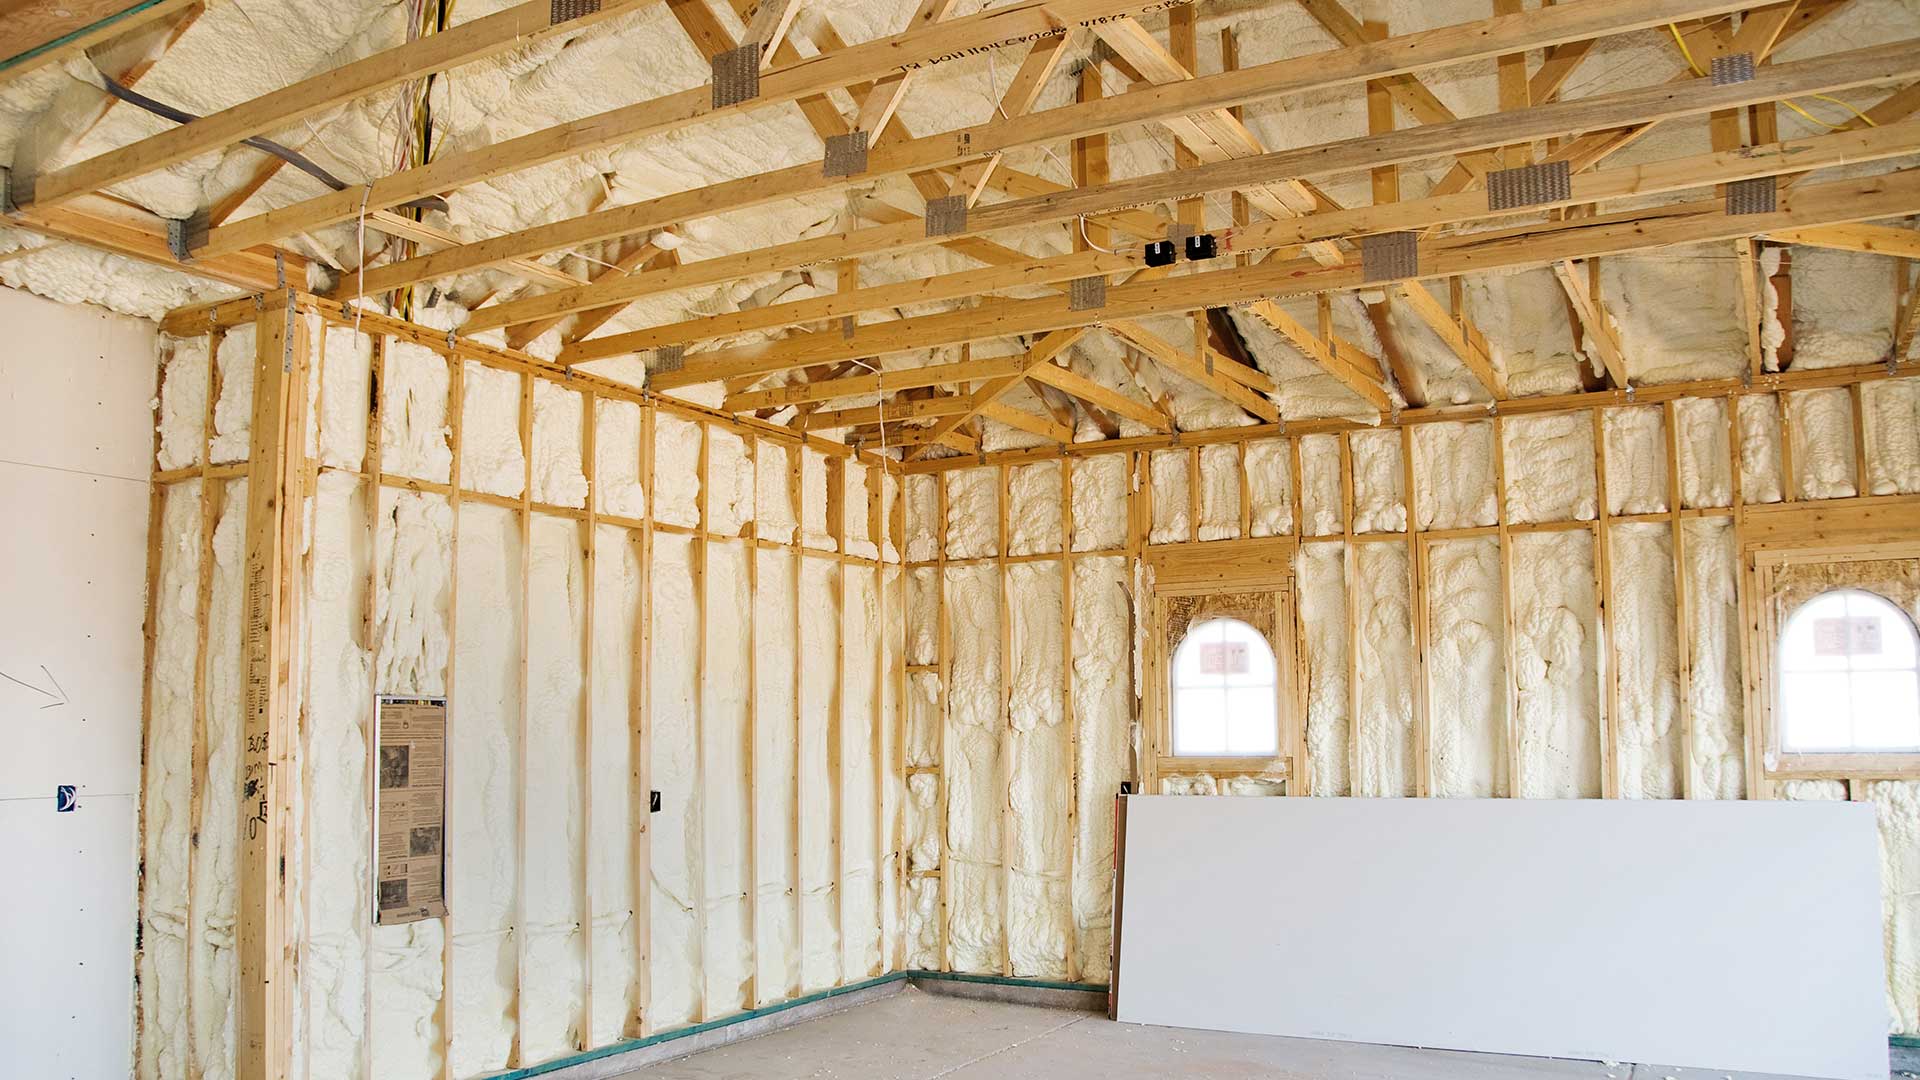 ocieplenie pianką poliuretanową domu drewnianego od wewnątrz -  w 2021